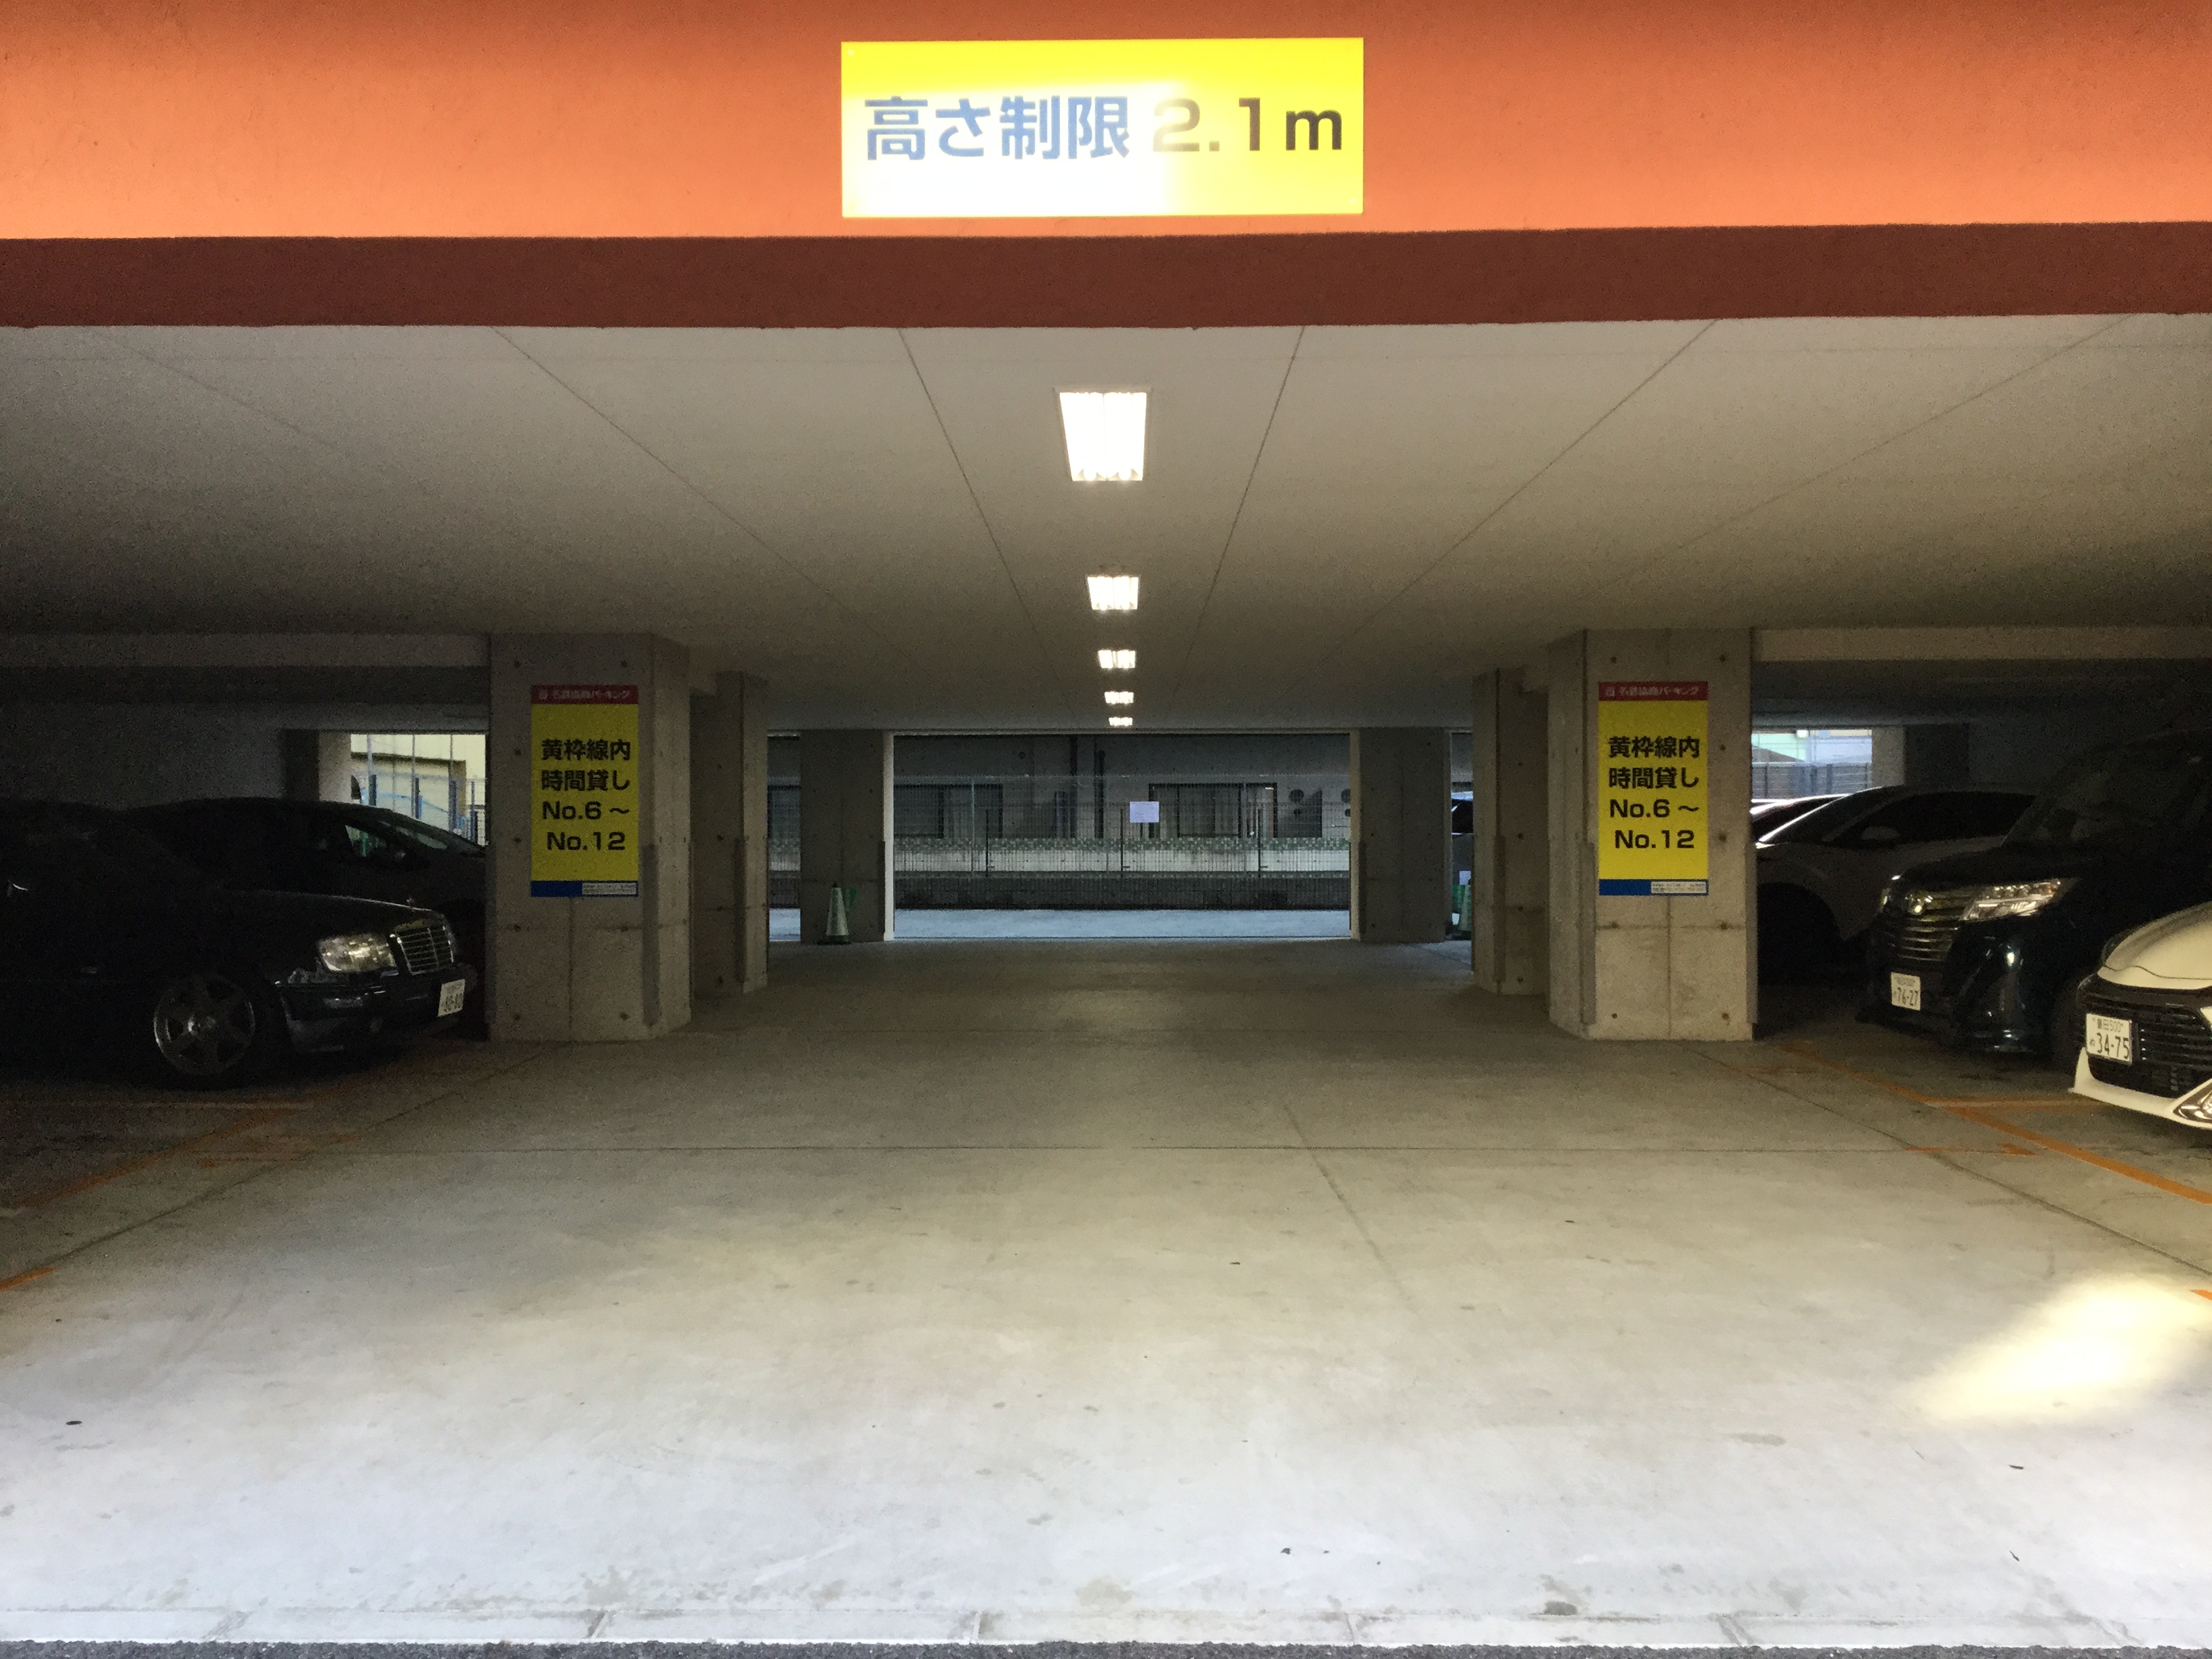 栄５丁目21 屋内 平面 月極駐車場の駐車場情報 日本駐車場検索